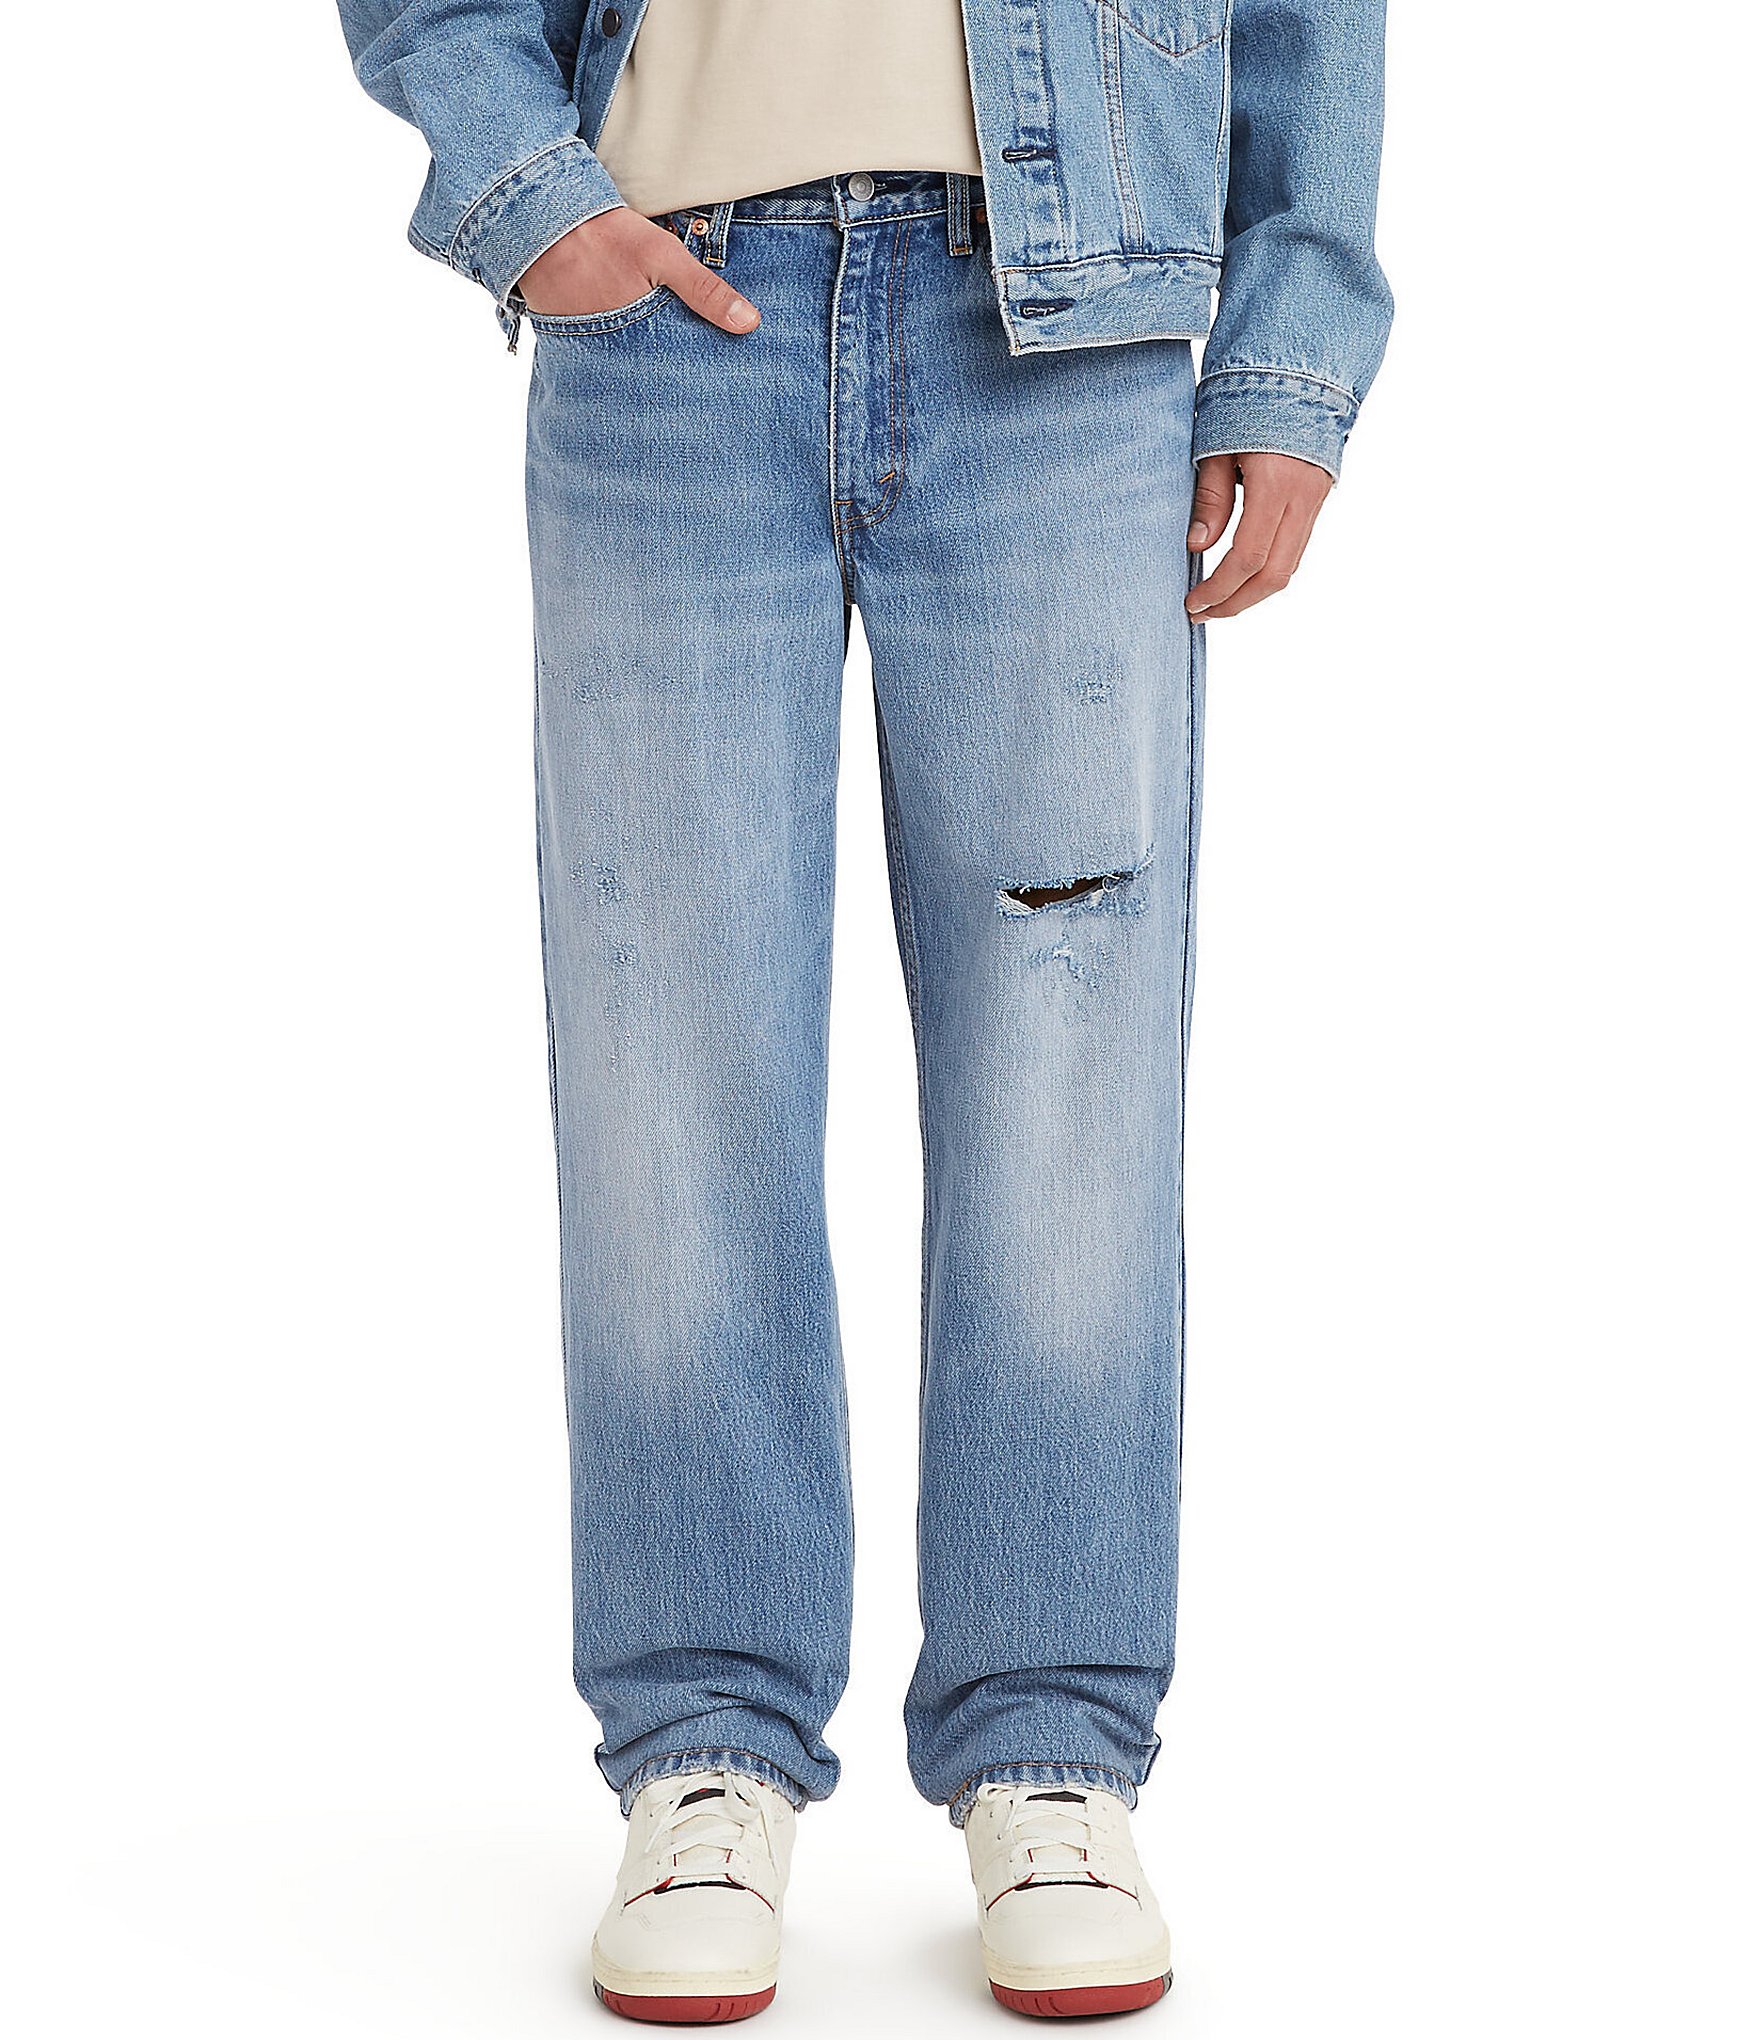 Levi's 550 Men's Blue Jeans Size 48x30